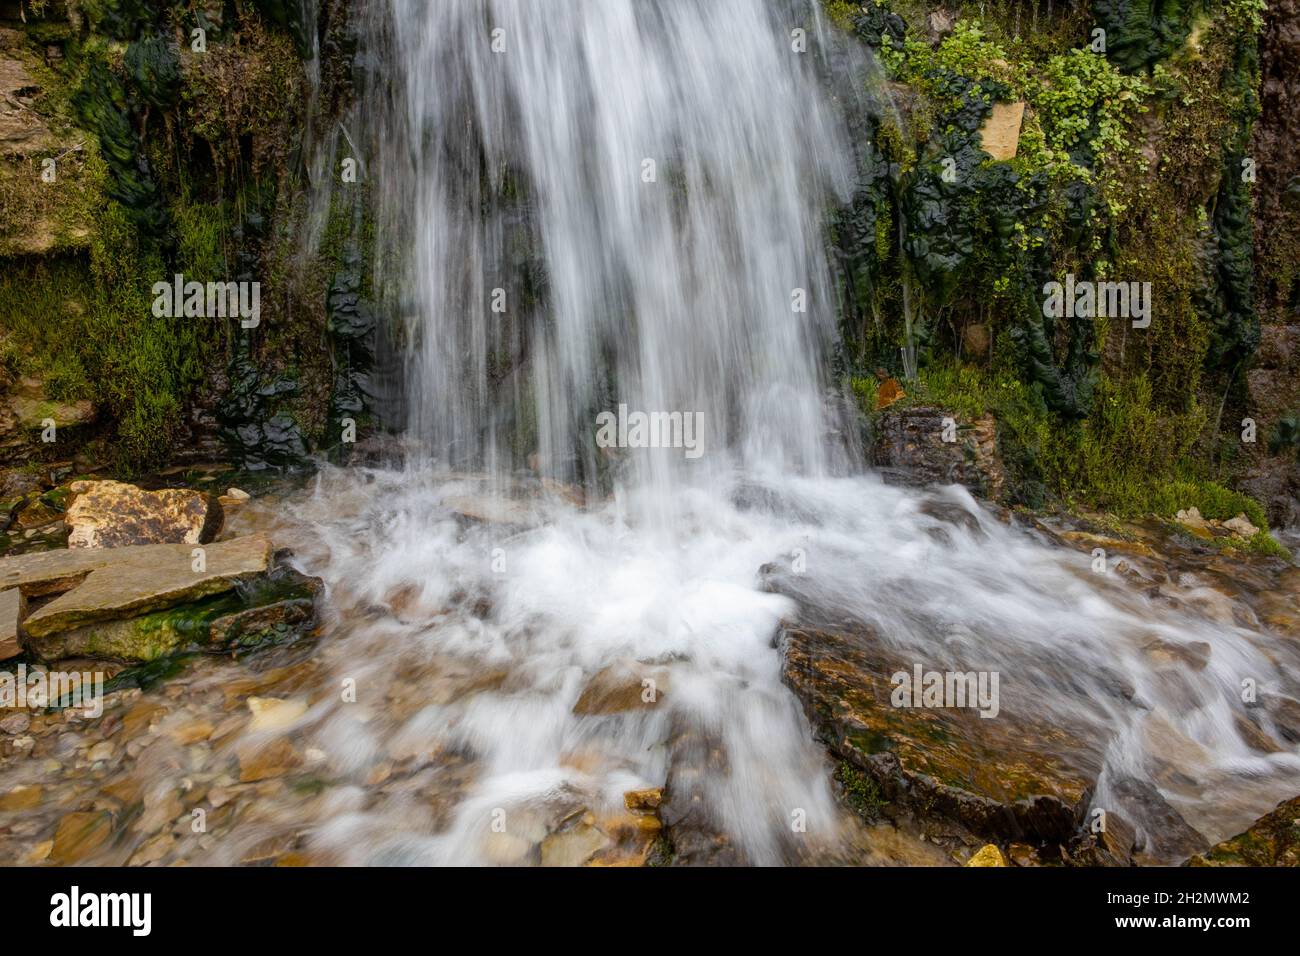 arroyo milenario del bosque frío, pequeñas cascadas sobre las rocas con musgo resbaladizo Foto de stock